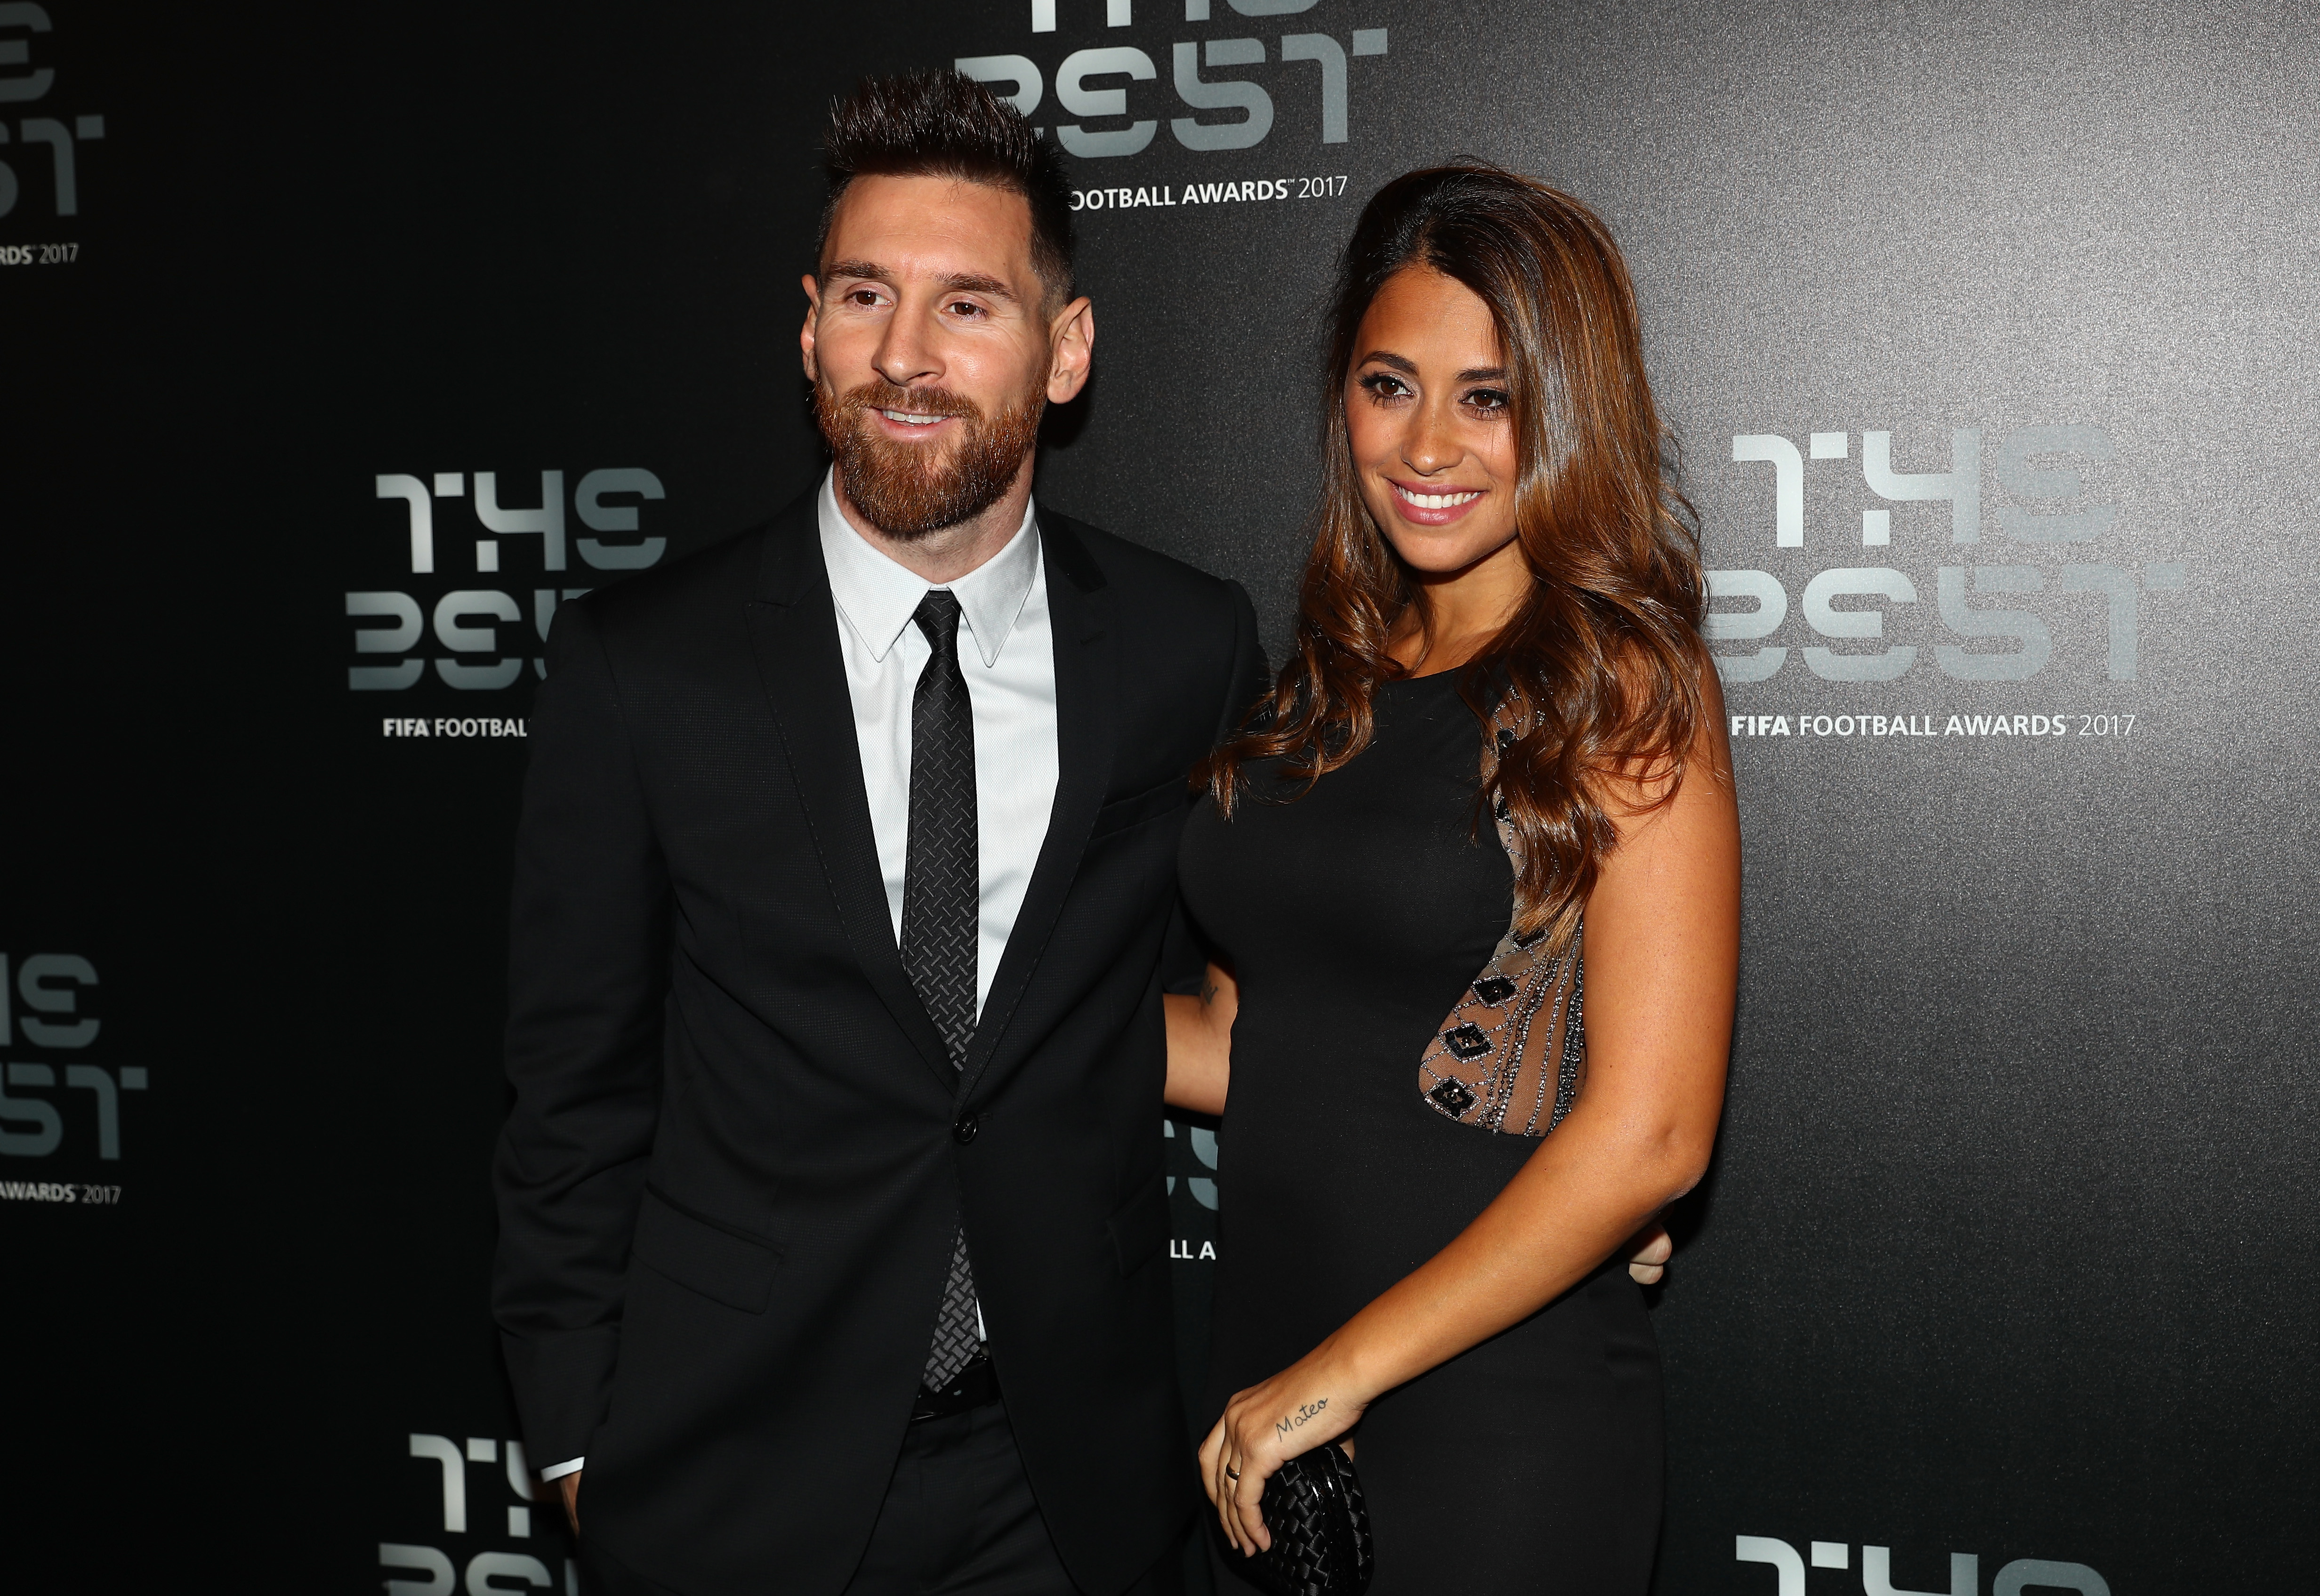 Antonella Roccuzzo Messi’s Wife 5 Fast Facts